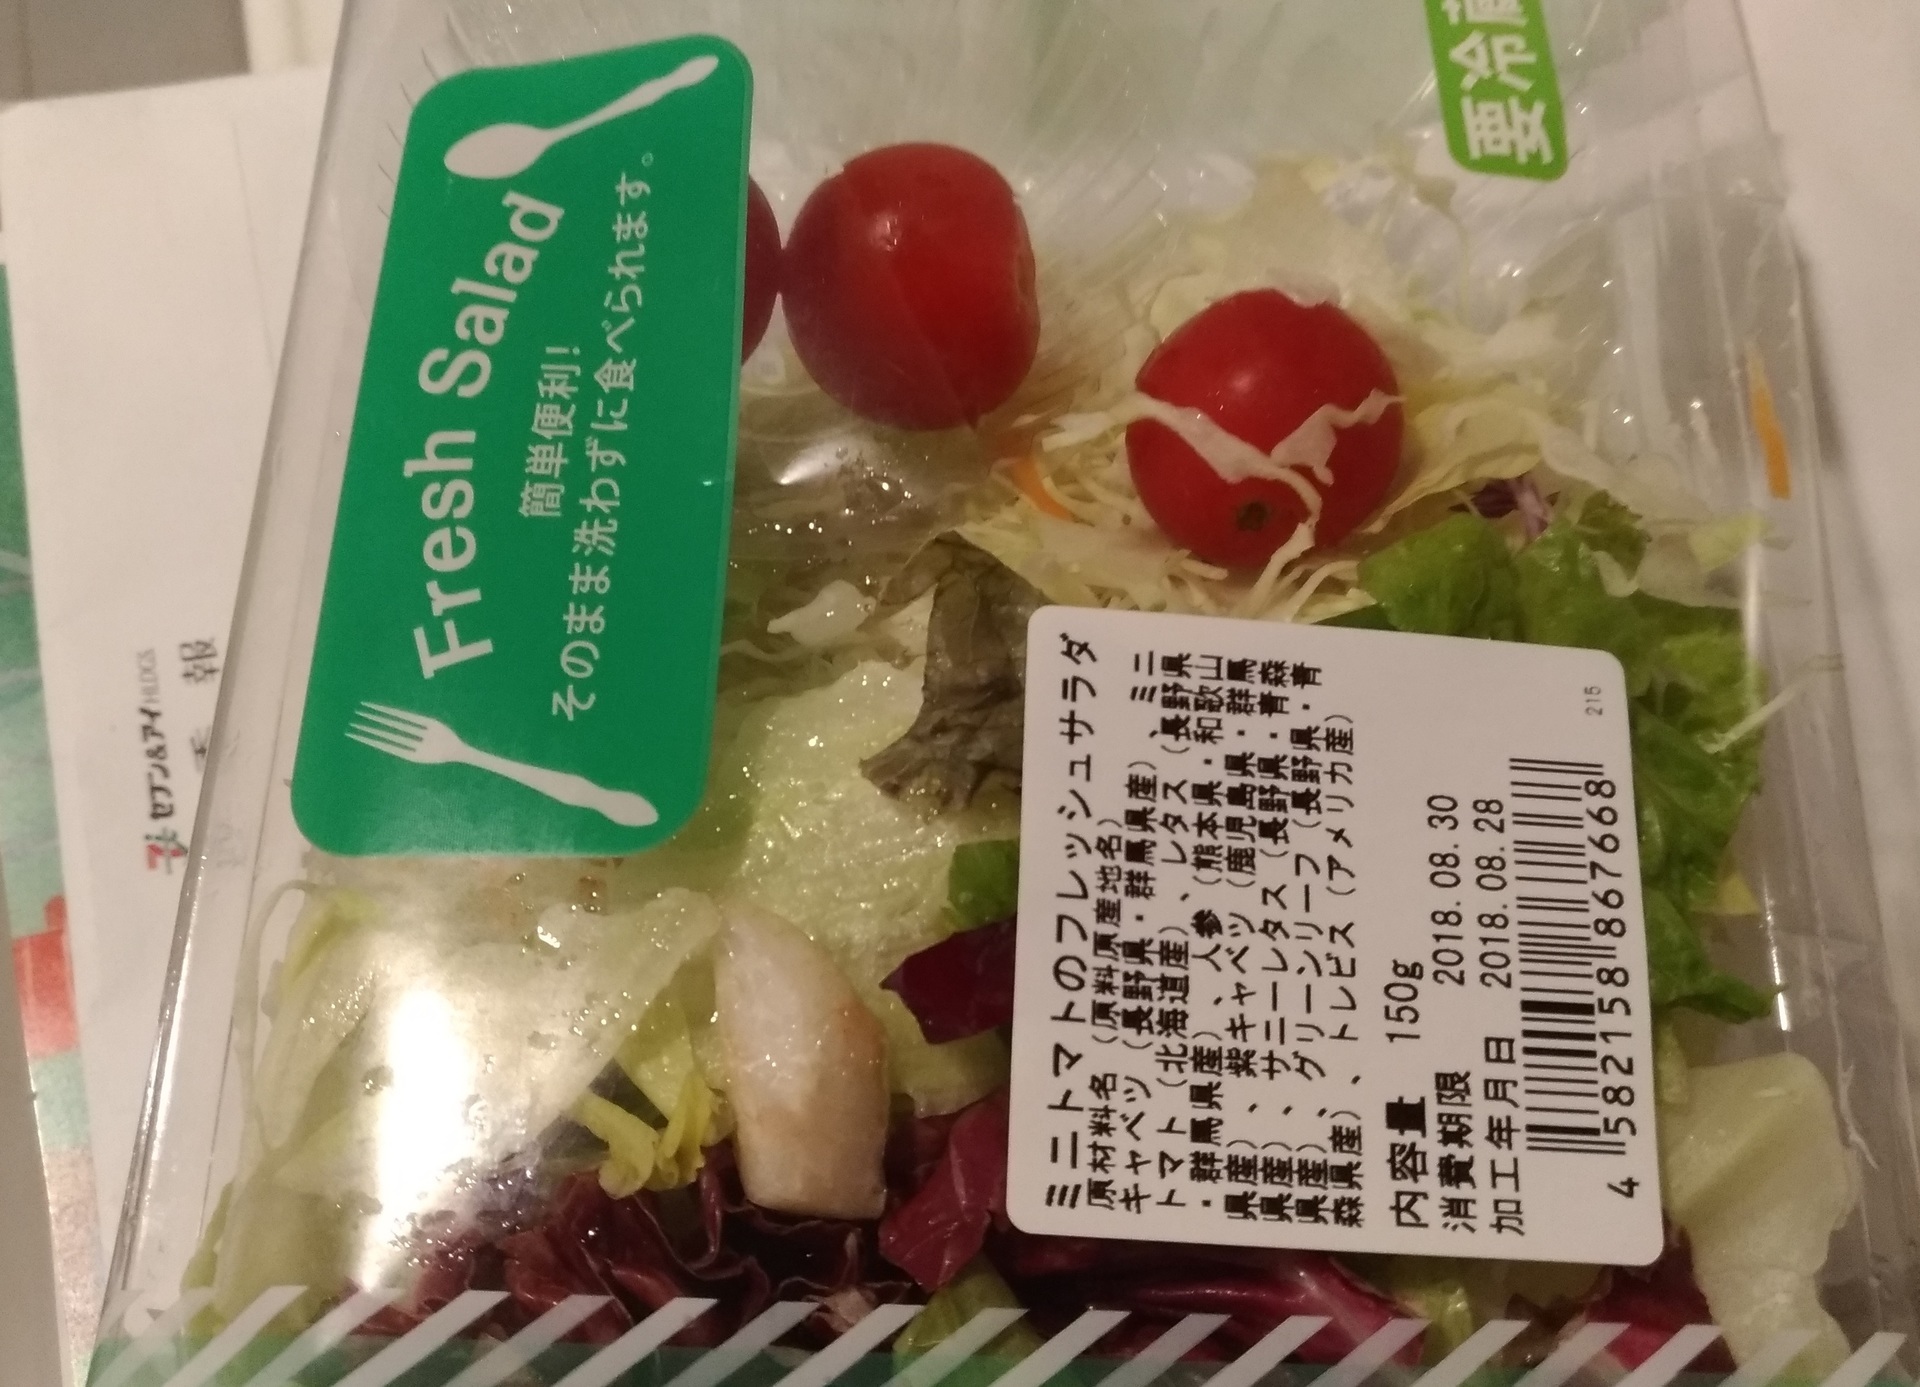 スーパーライフサラダ ミニトマトのフレッシュサラダ野菜コーナー スーパーライフ 大阪おすすめお惣菜野菜をブログでポイントも